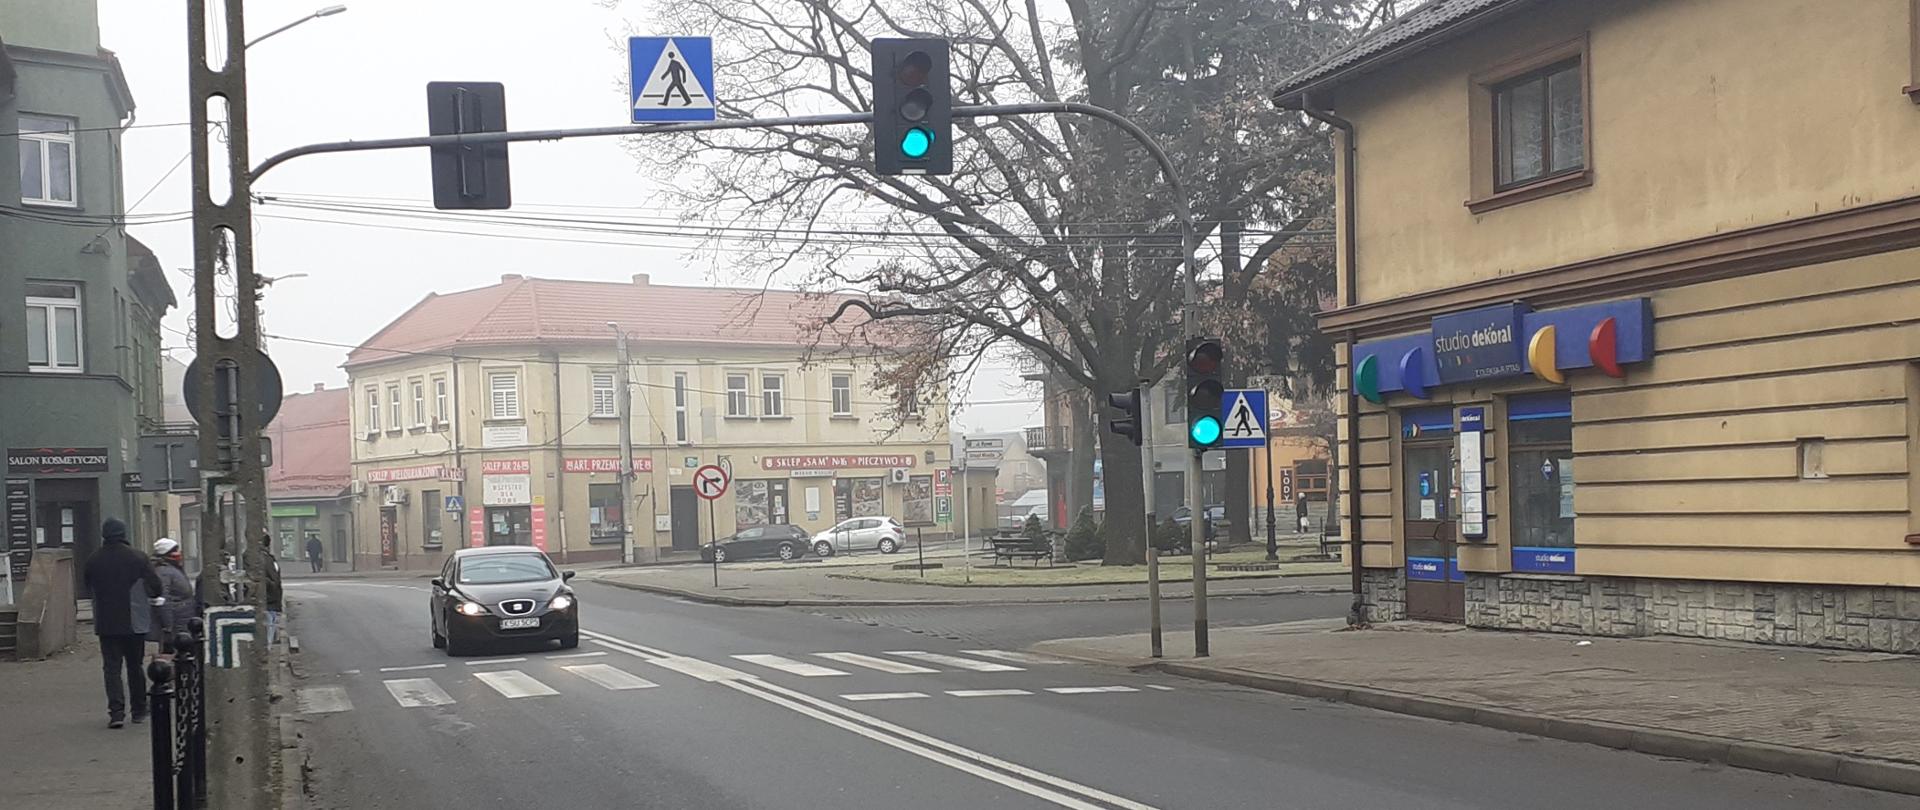 miasto Maków Podhalański, ulica, sygnalizacja świetlna, przejście dla pieszych